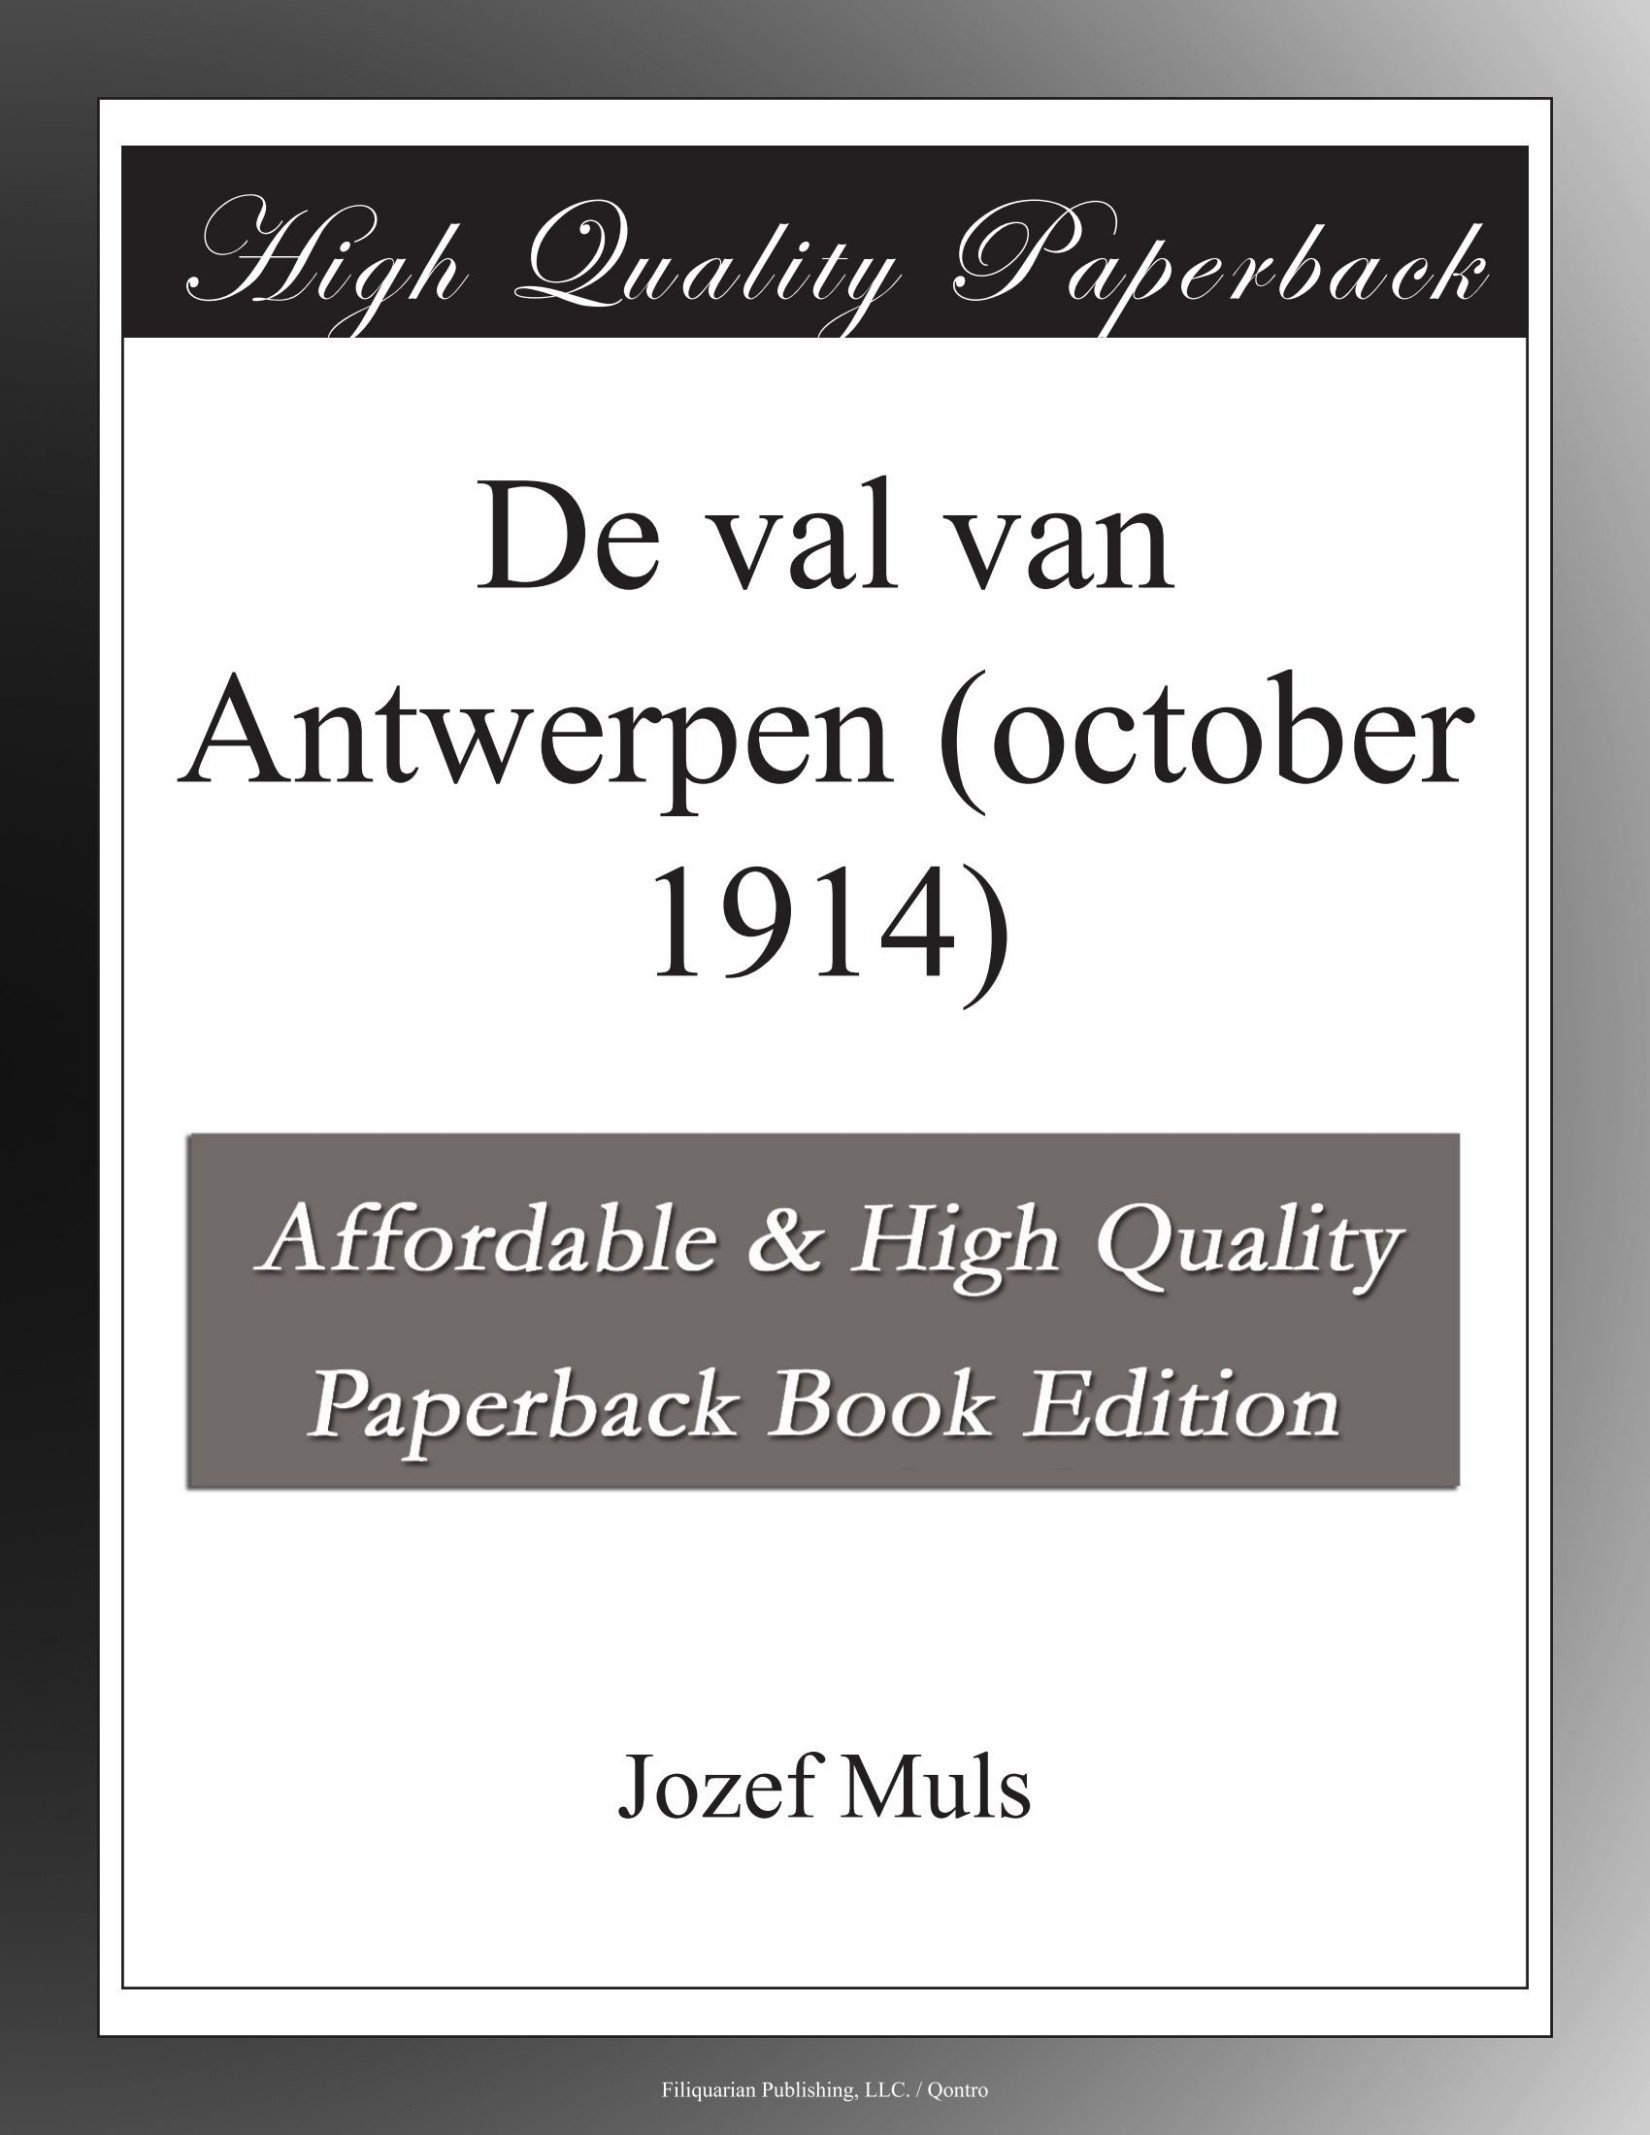 De val van Antwerpen (october 1914)